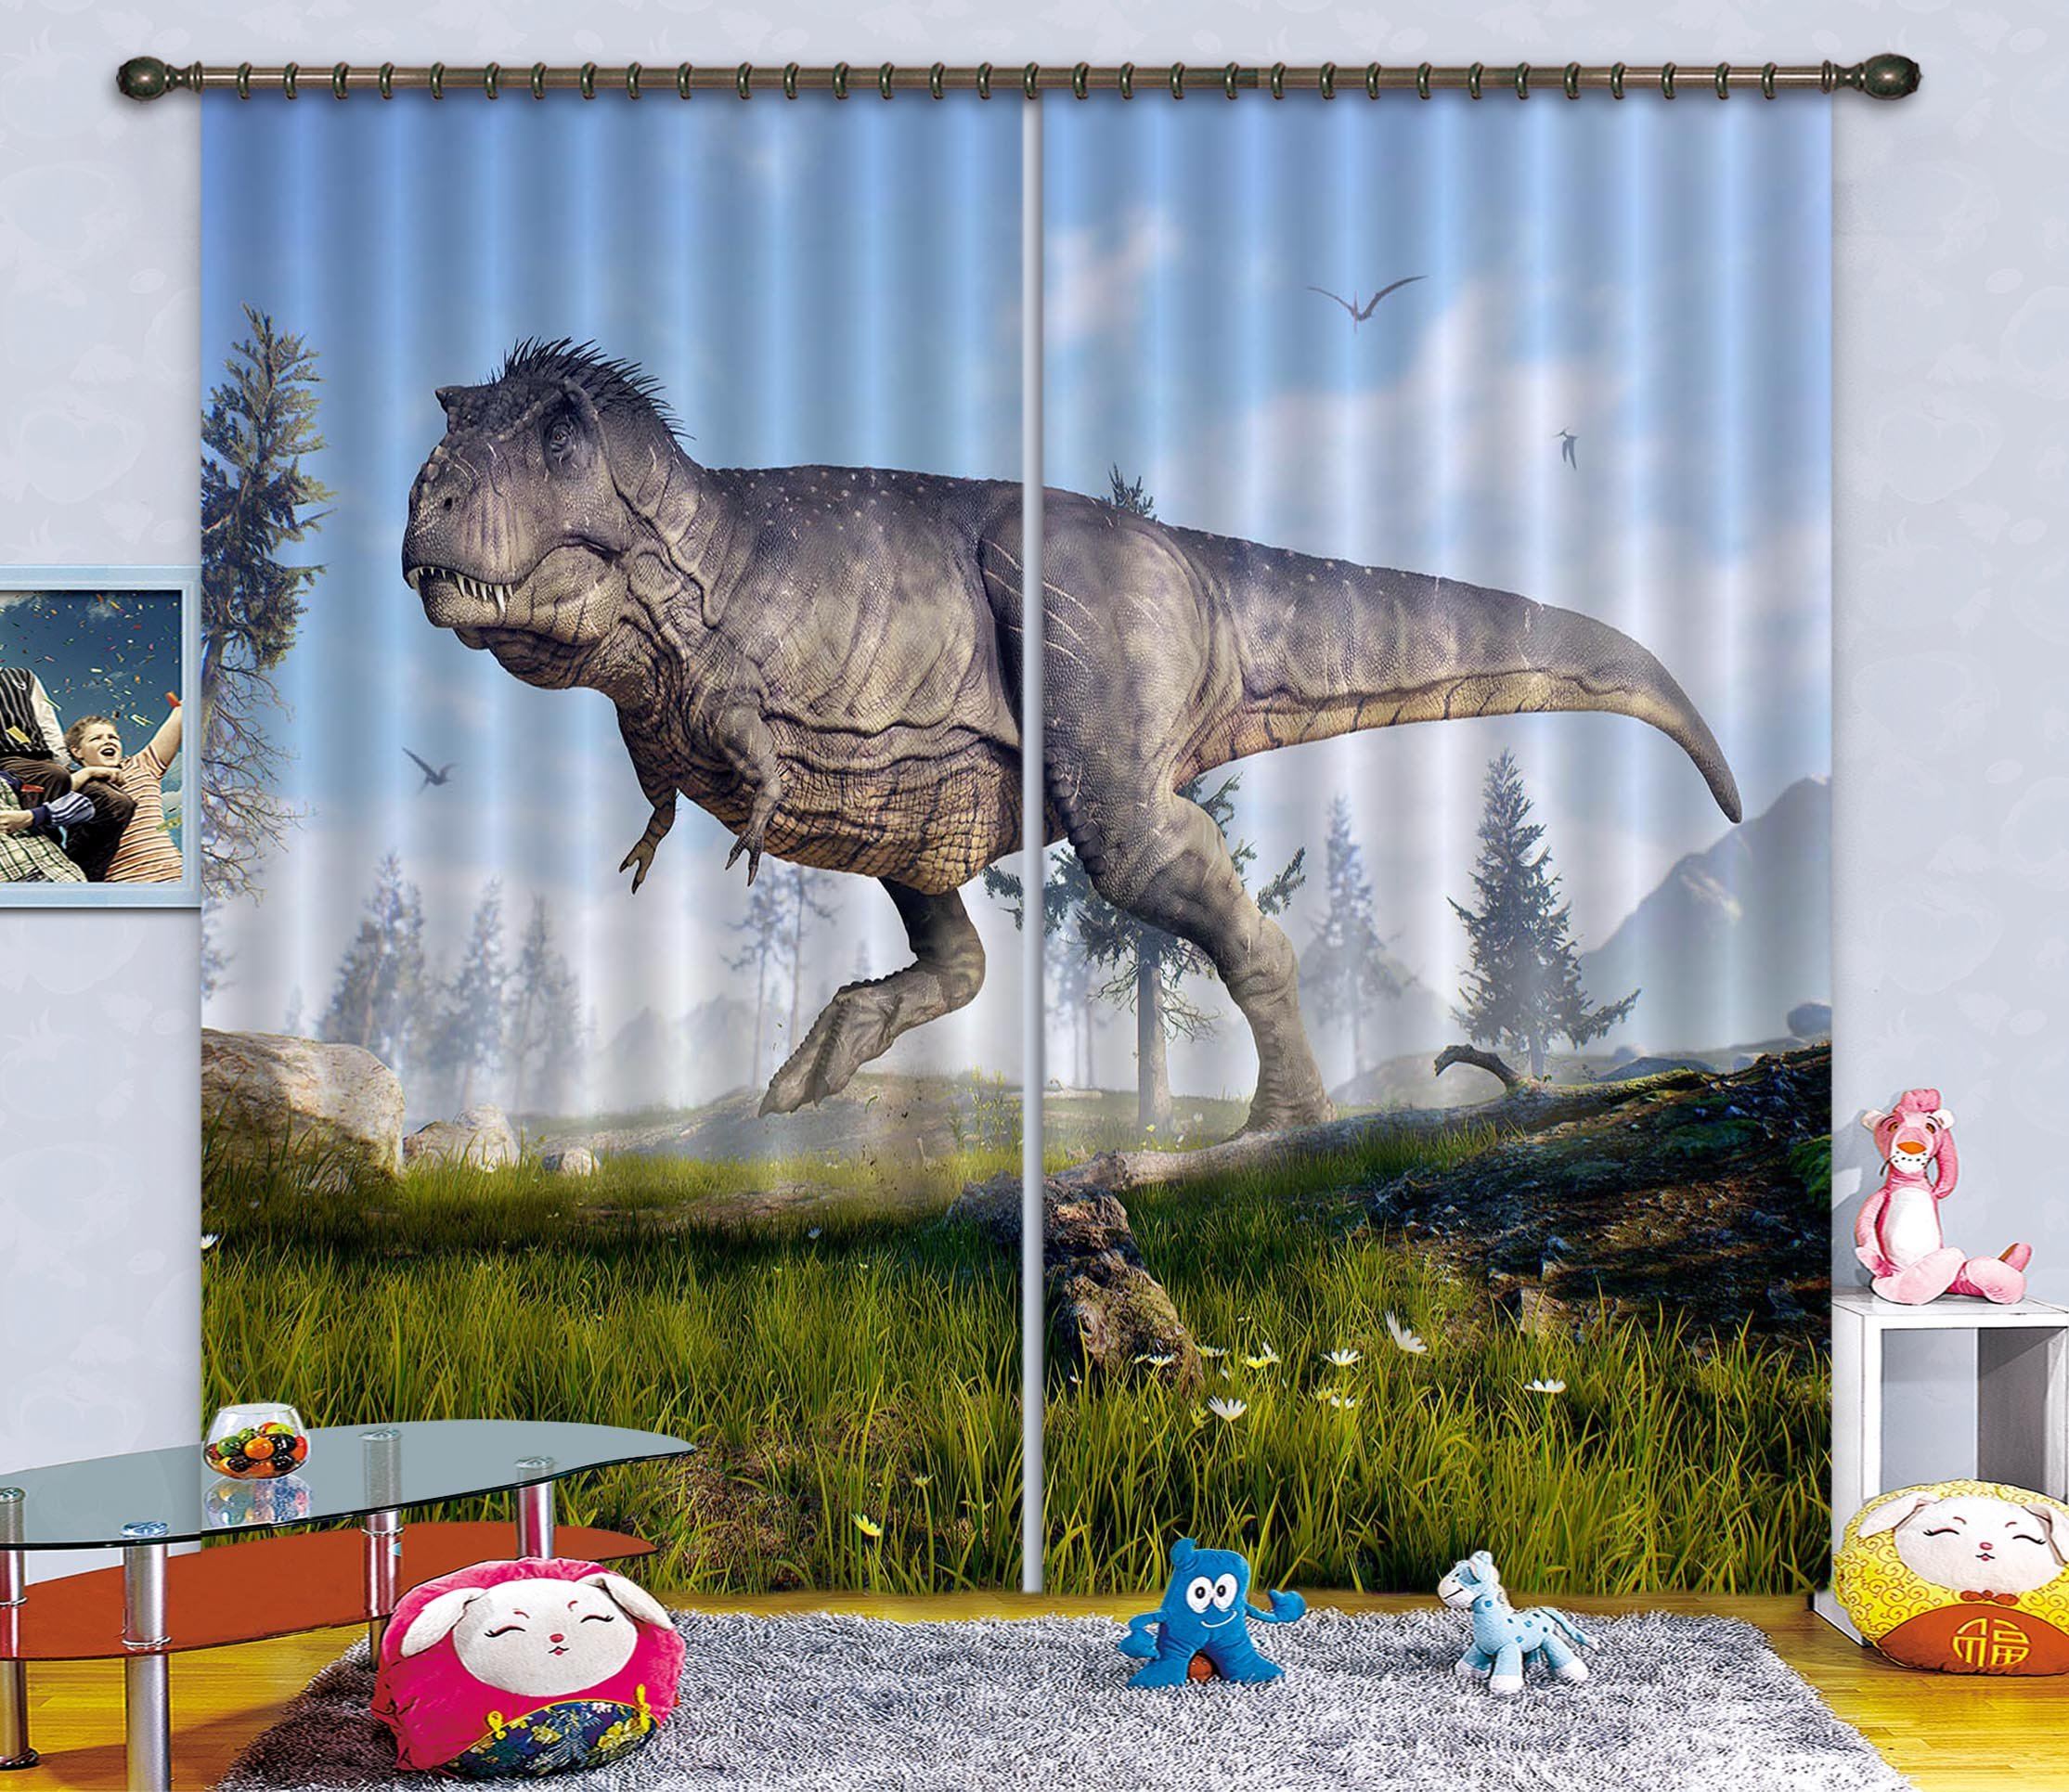 3D Chrysanthemum Dinosaur 131 Curtains Drapes Curtains AJ Creativity Home 